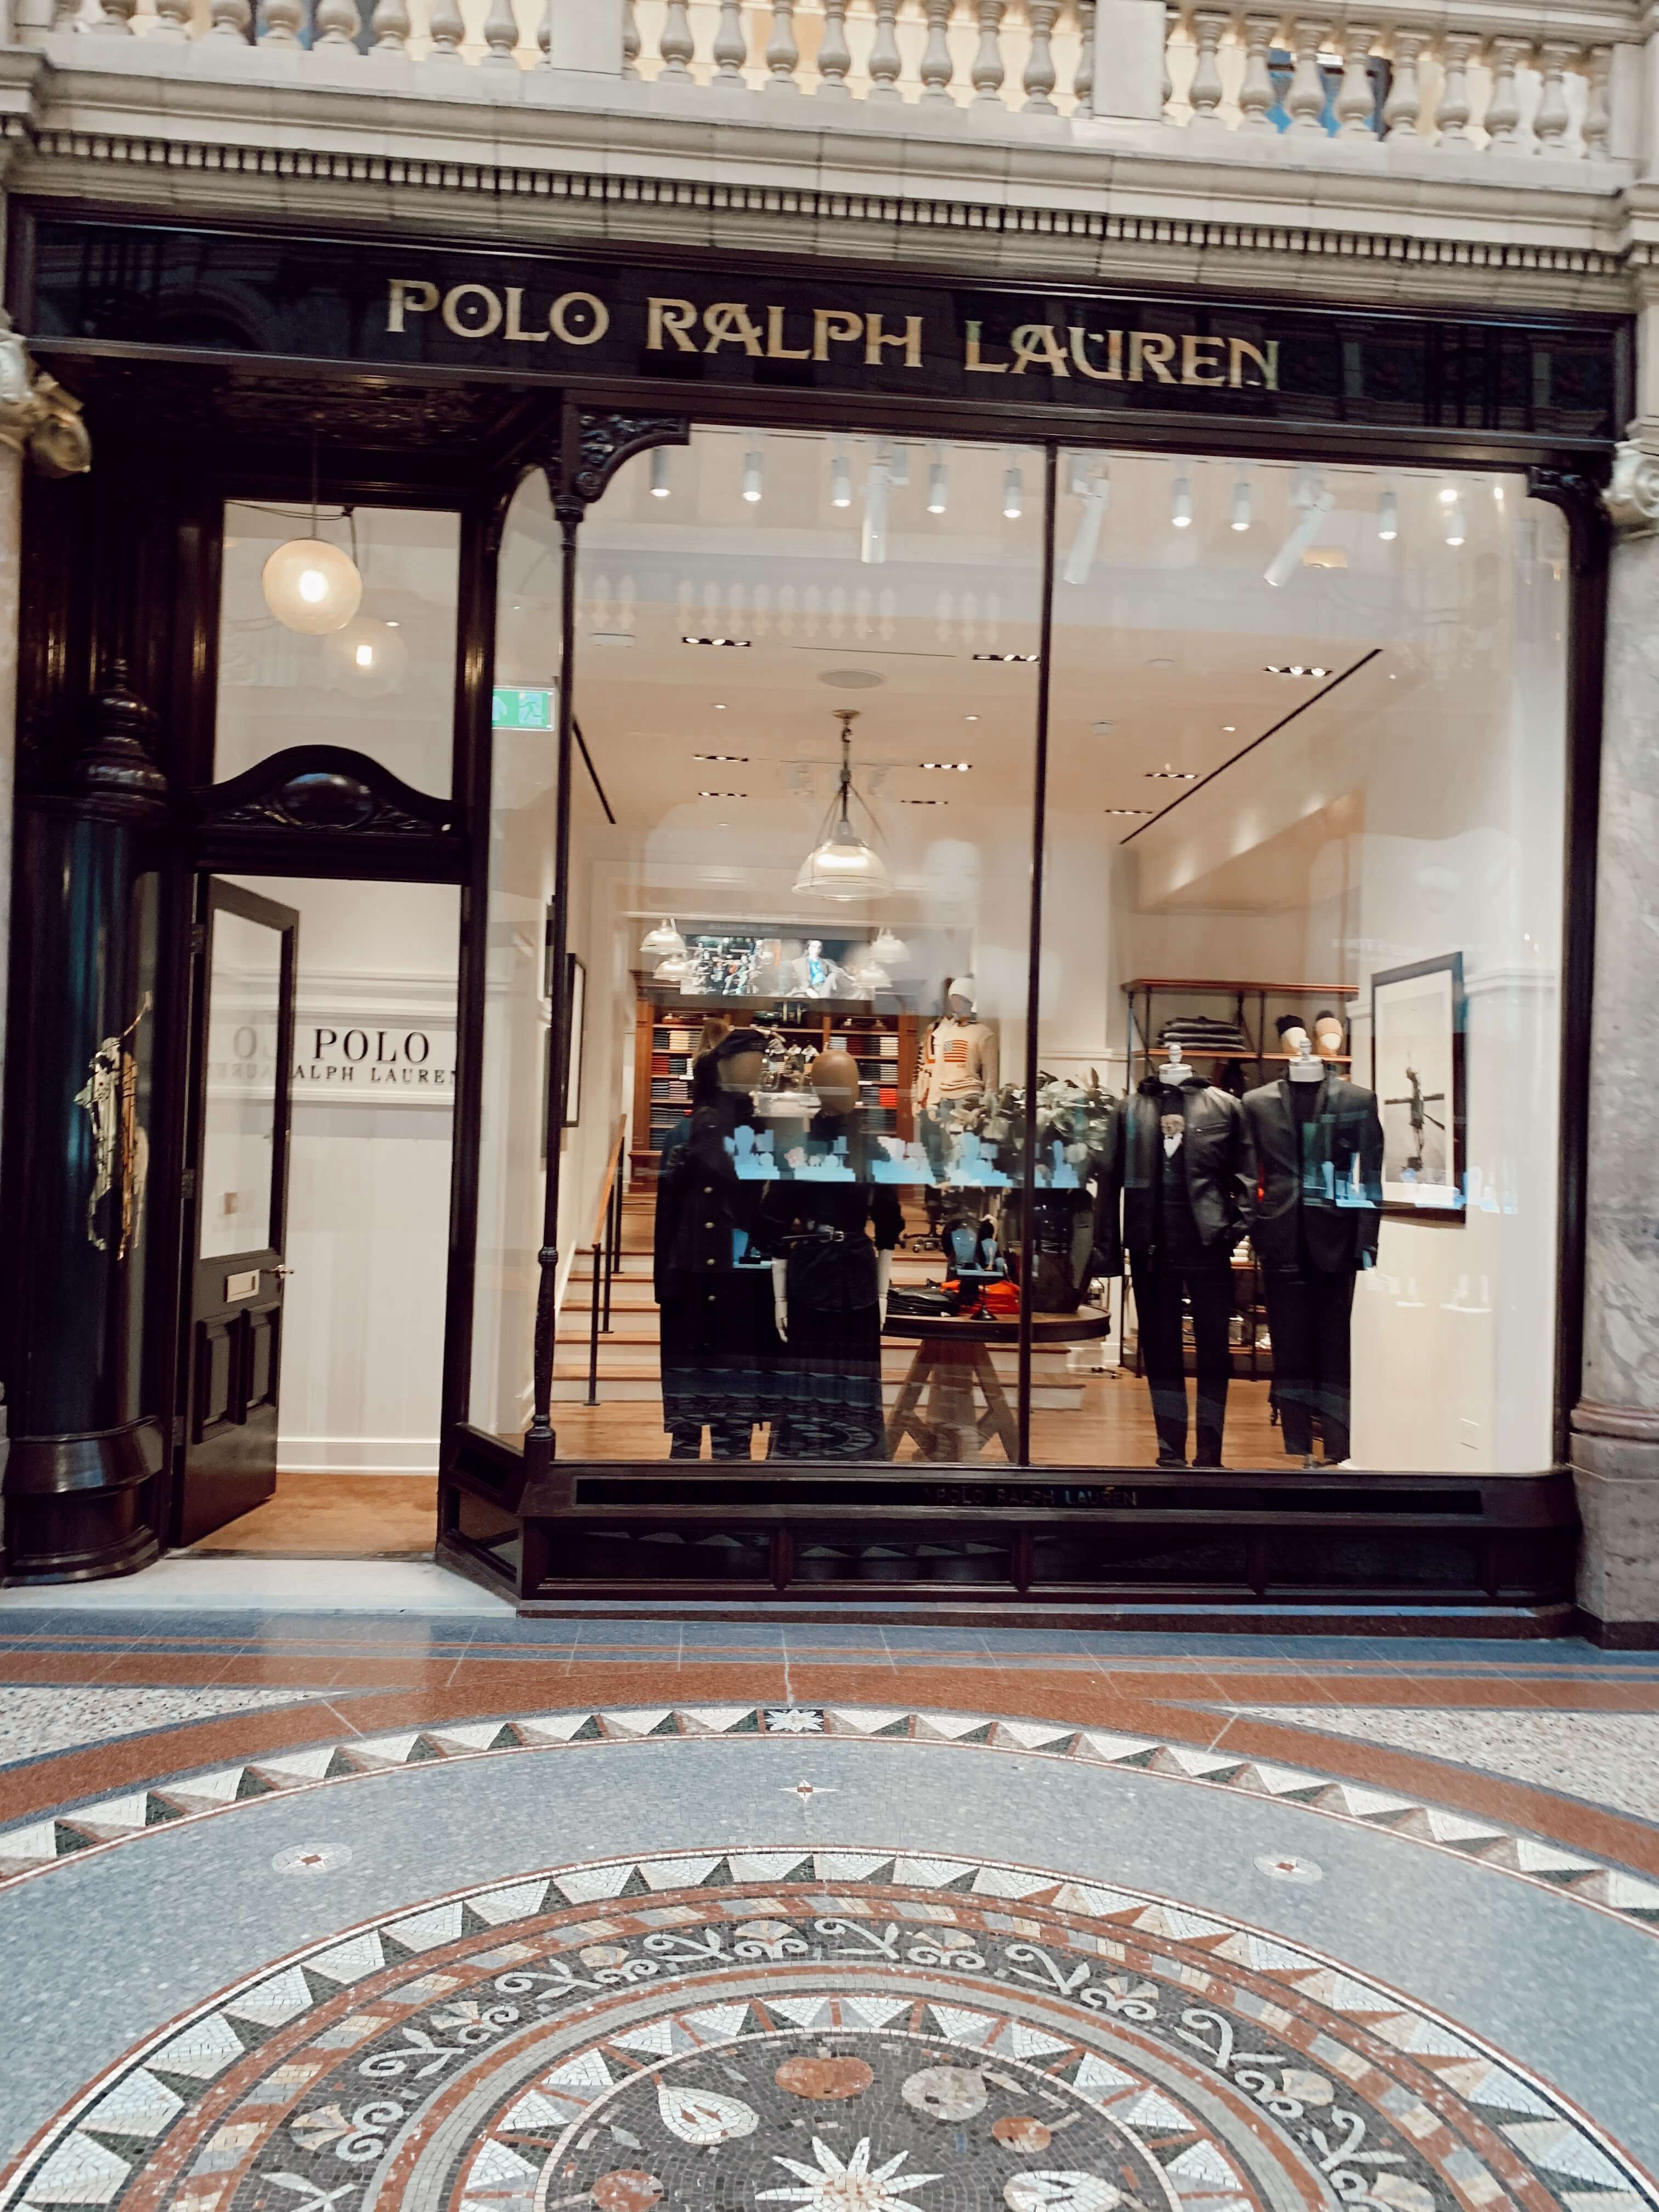 Polo Ralph Lauren - Leeds - by lauren jane